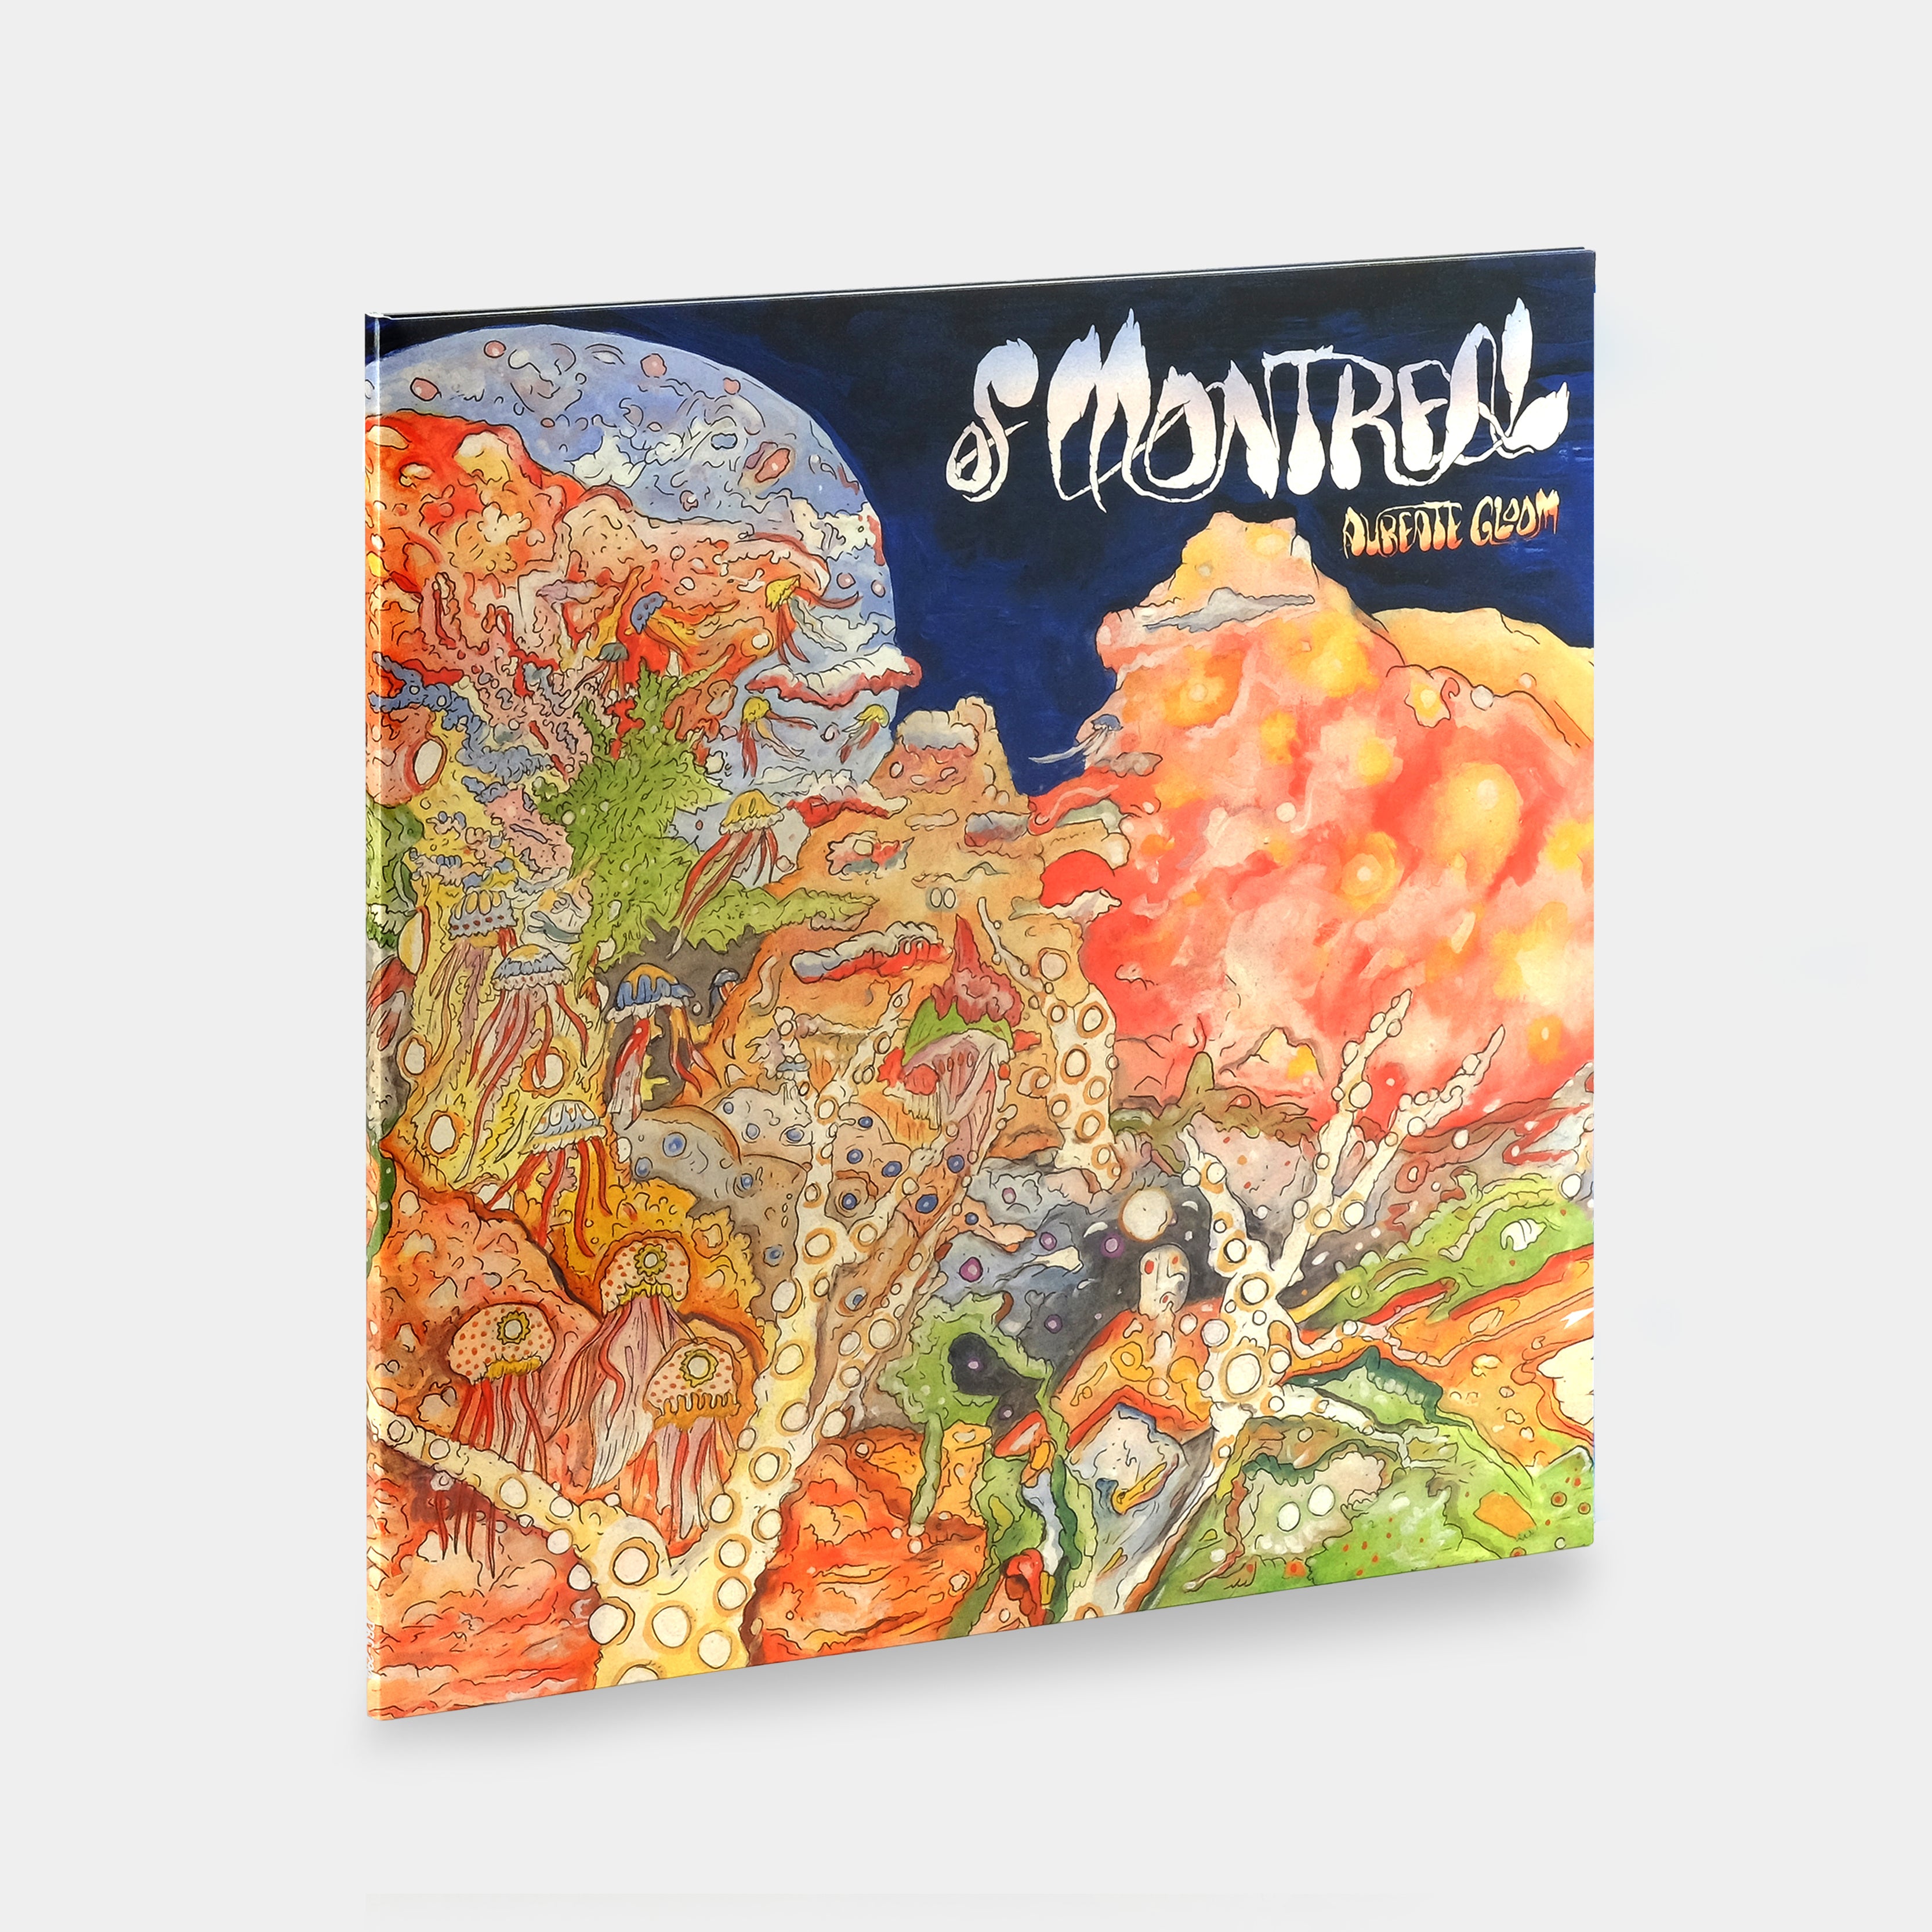 Of Montreal - Aureate Gloom LP Blue Marble Vinyl Record